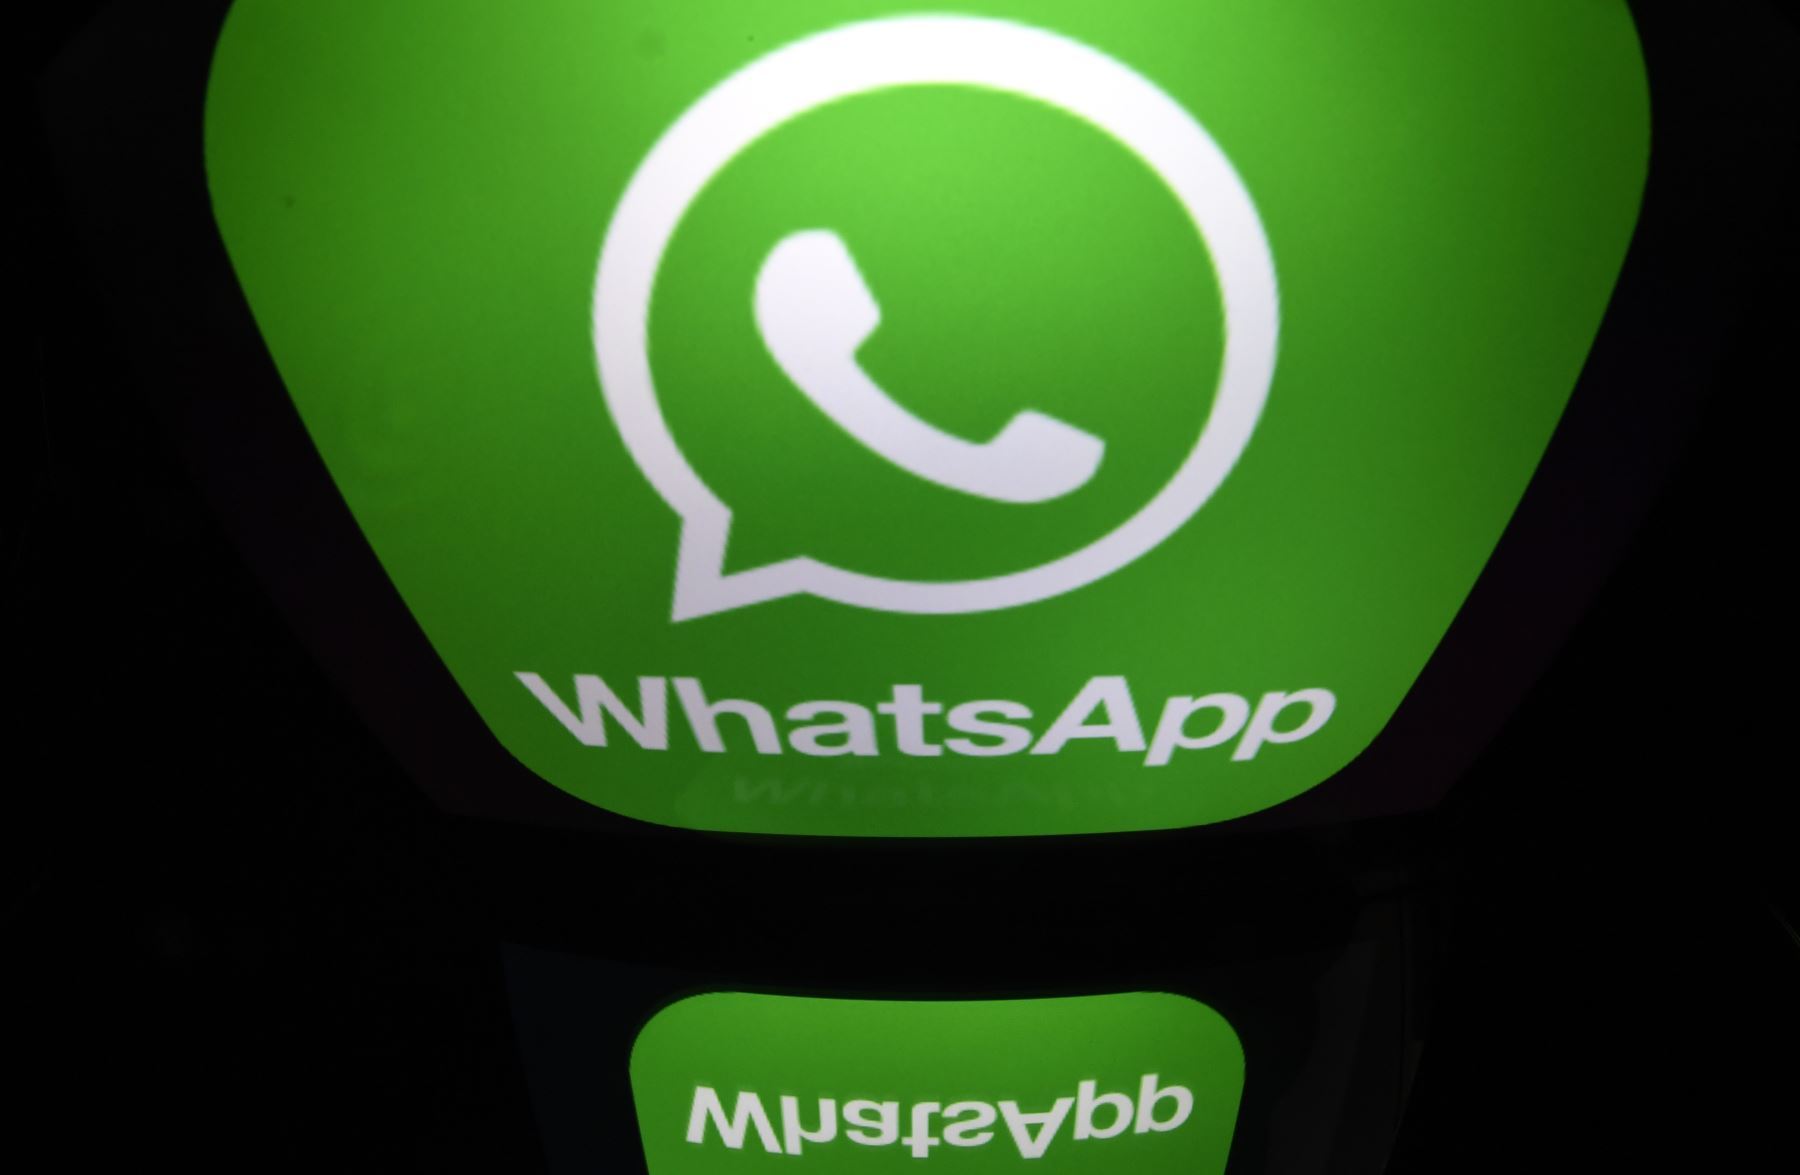 La aplicación de mensajería WhatsApp, perteneciente a Meta, ha sumado nuevas herramientas para editar los estados de WhatsApp de forma similar a Instagram. Foto: AFP